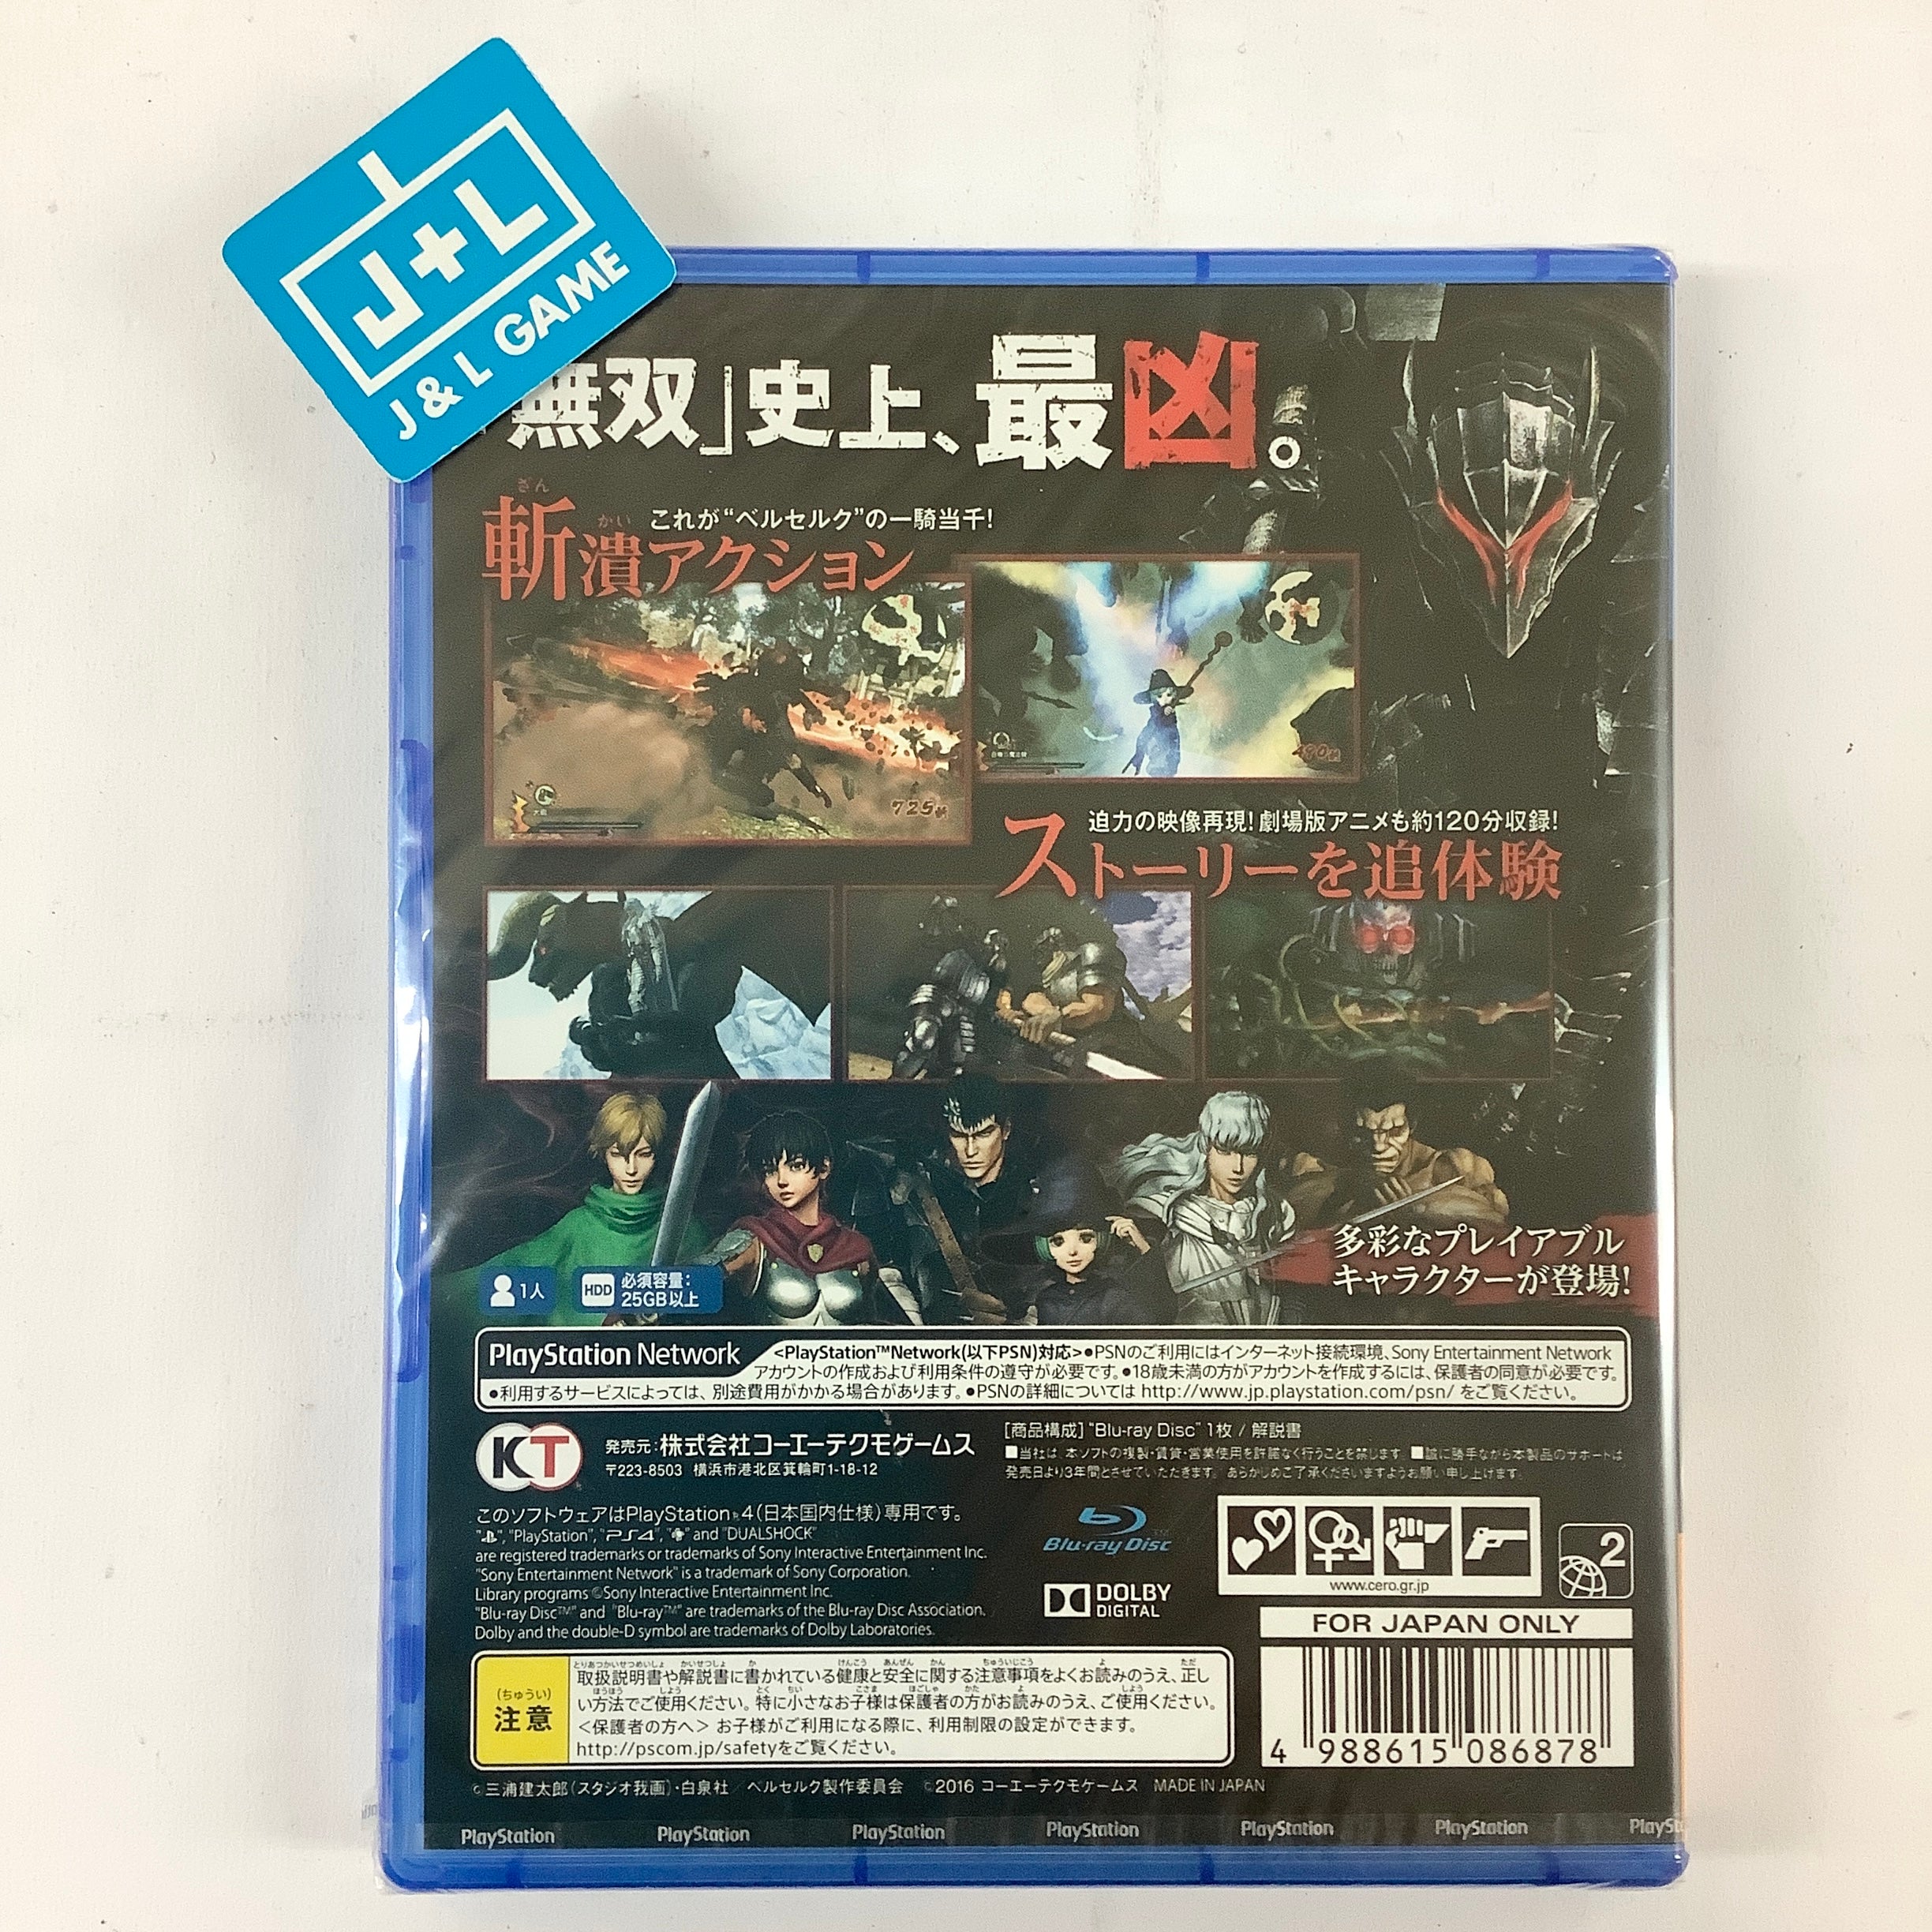 Berserk Musou - (PS4) PlayStation 4 (Japanese Import) Video Games Koei Tecmo Games   